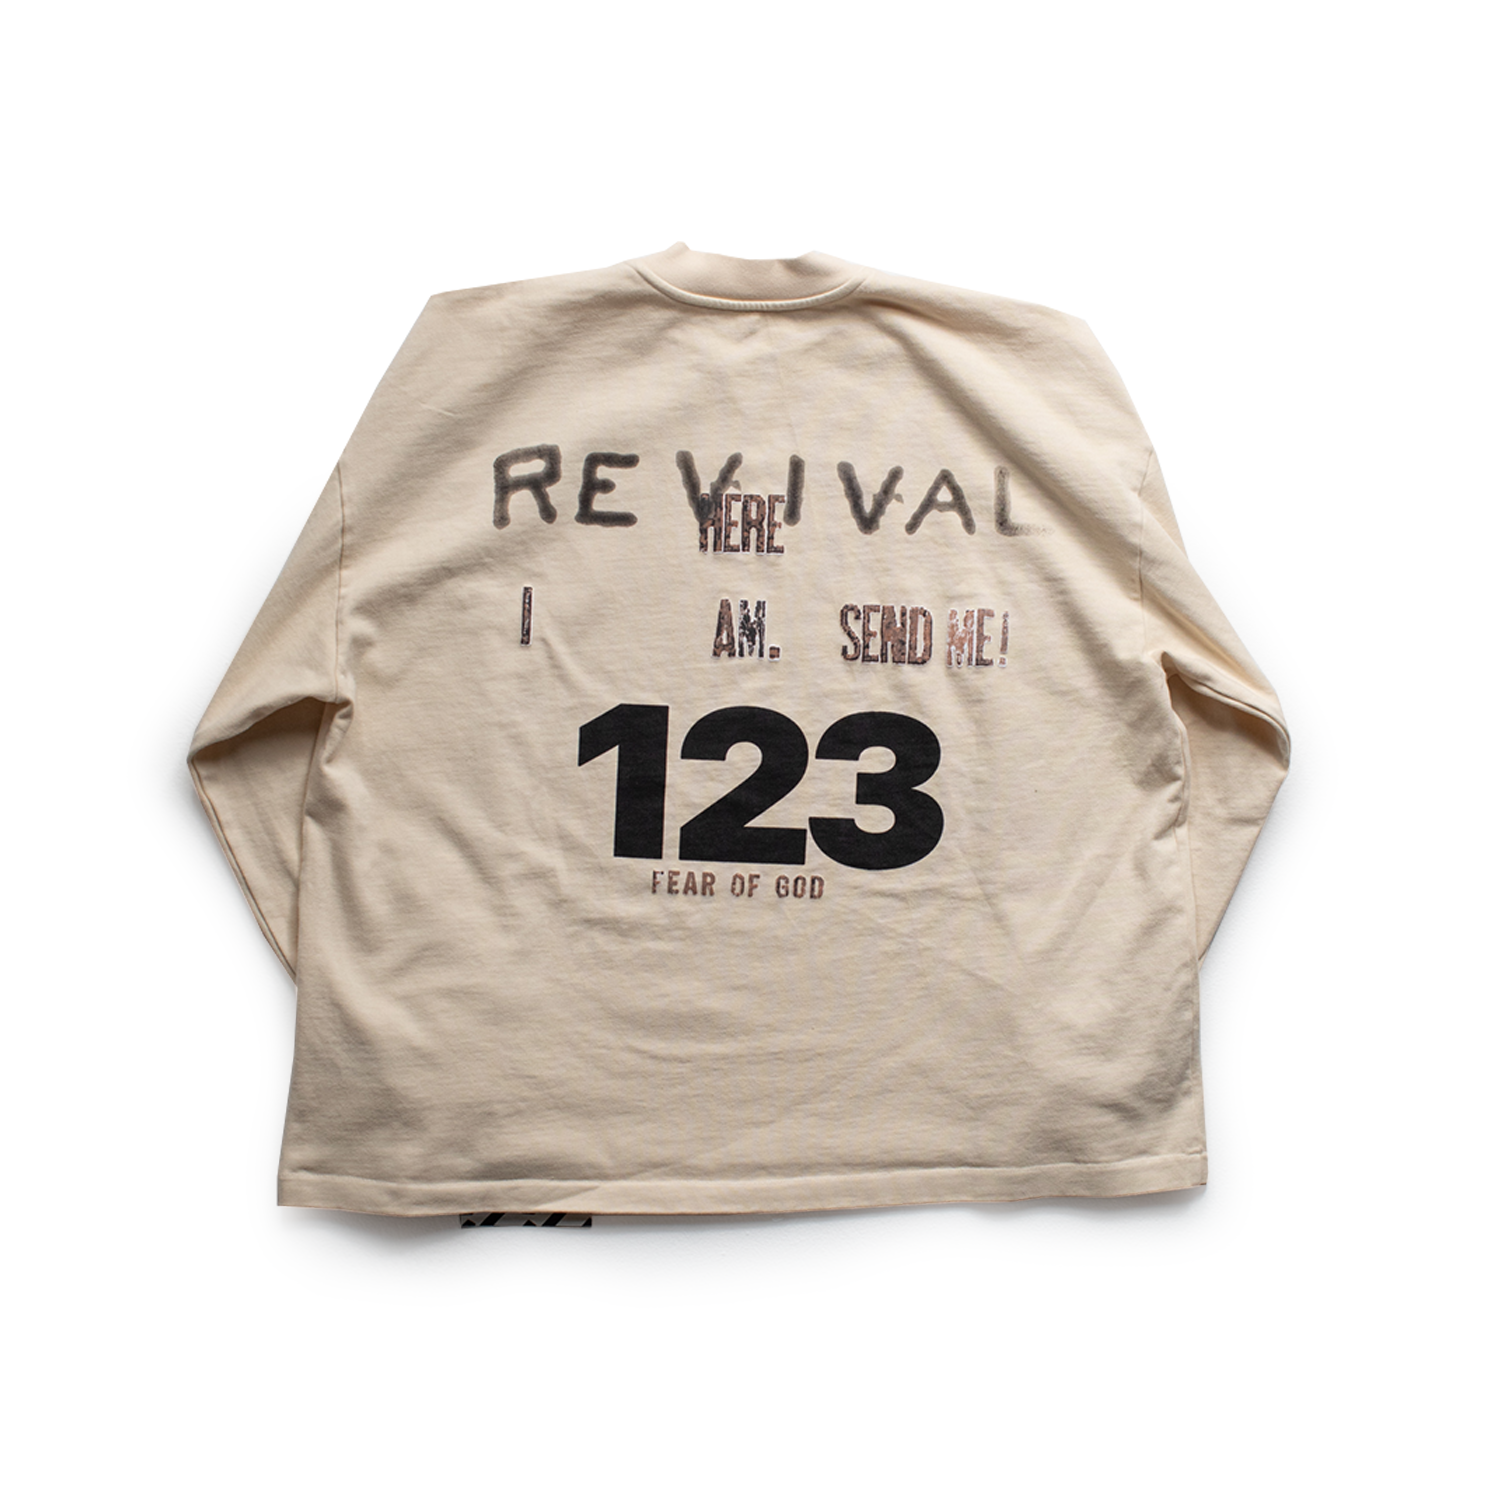 RRR123 x FEAR OF GOD - Revival L/S Shirt